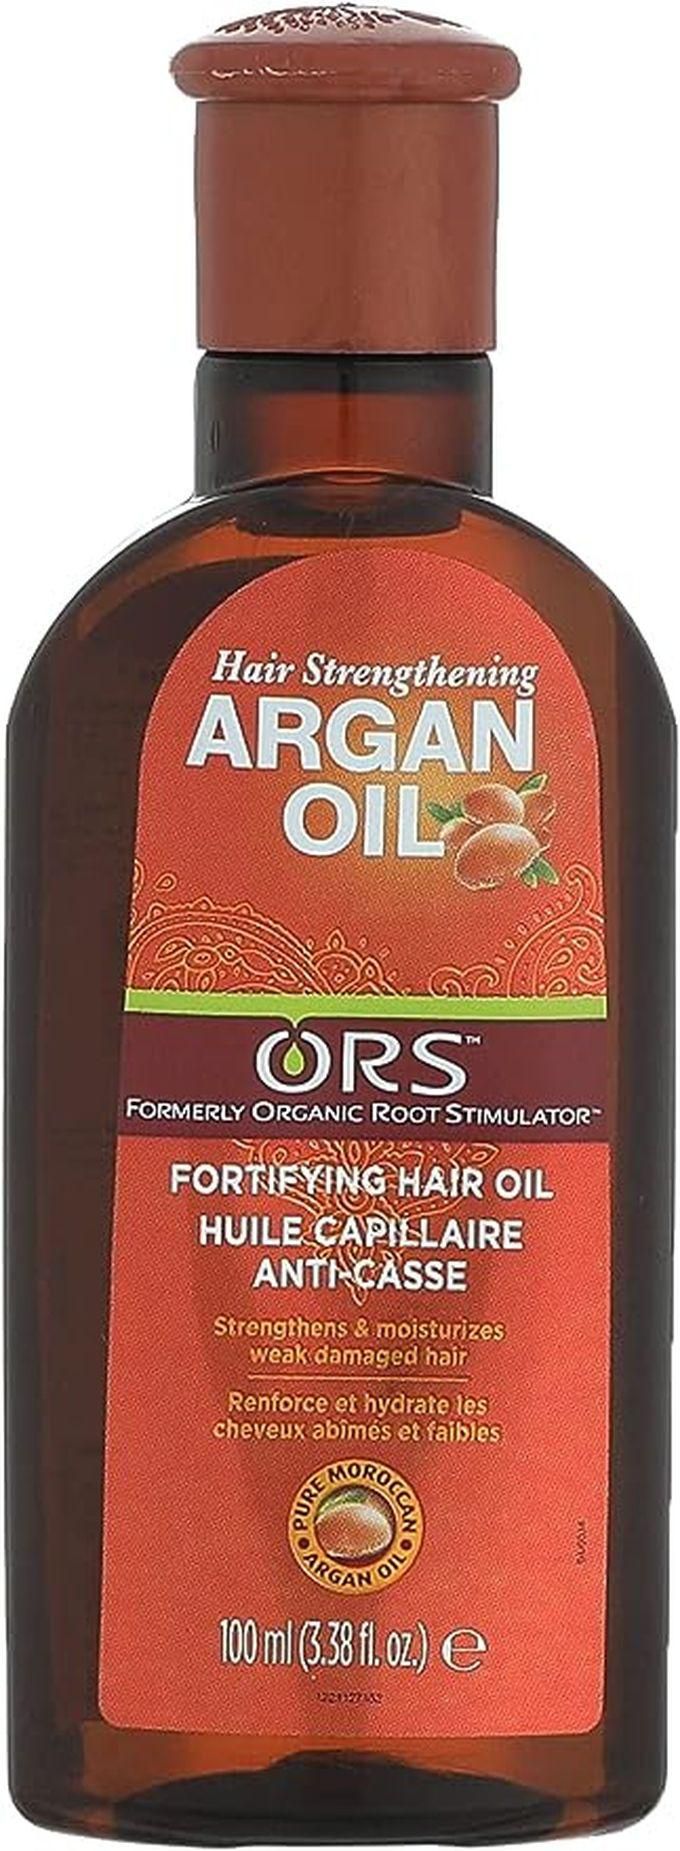 Ors Argan Oil Fortifying Hair Oil - 100ml